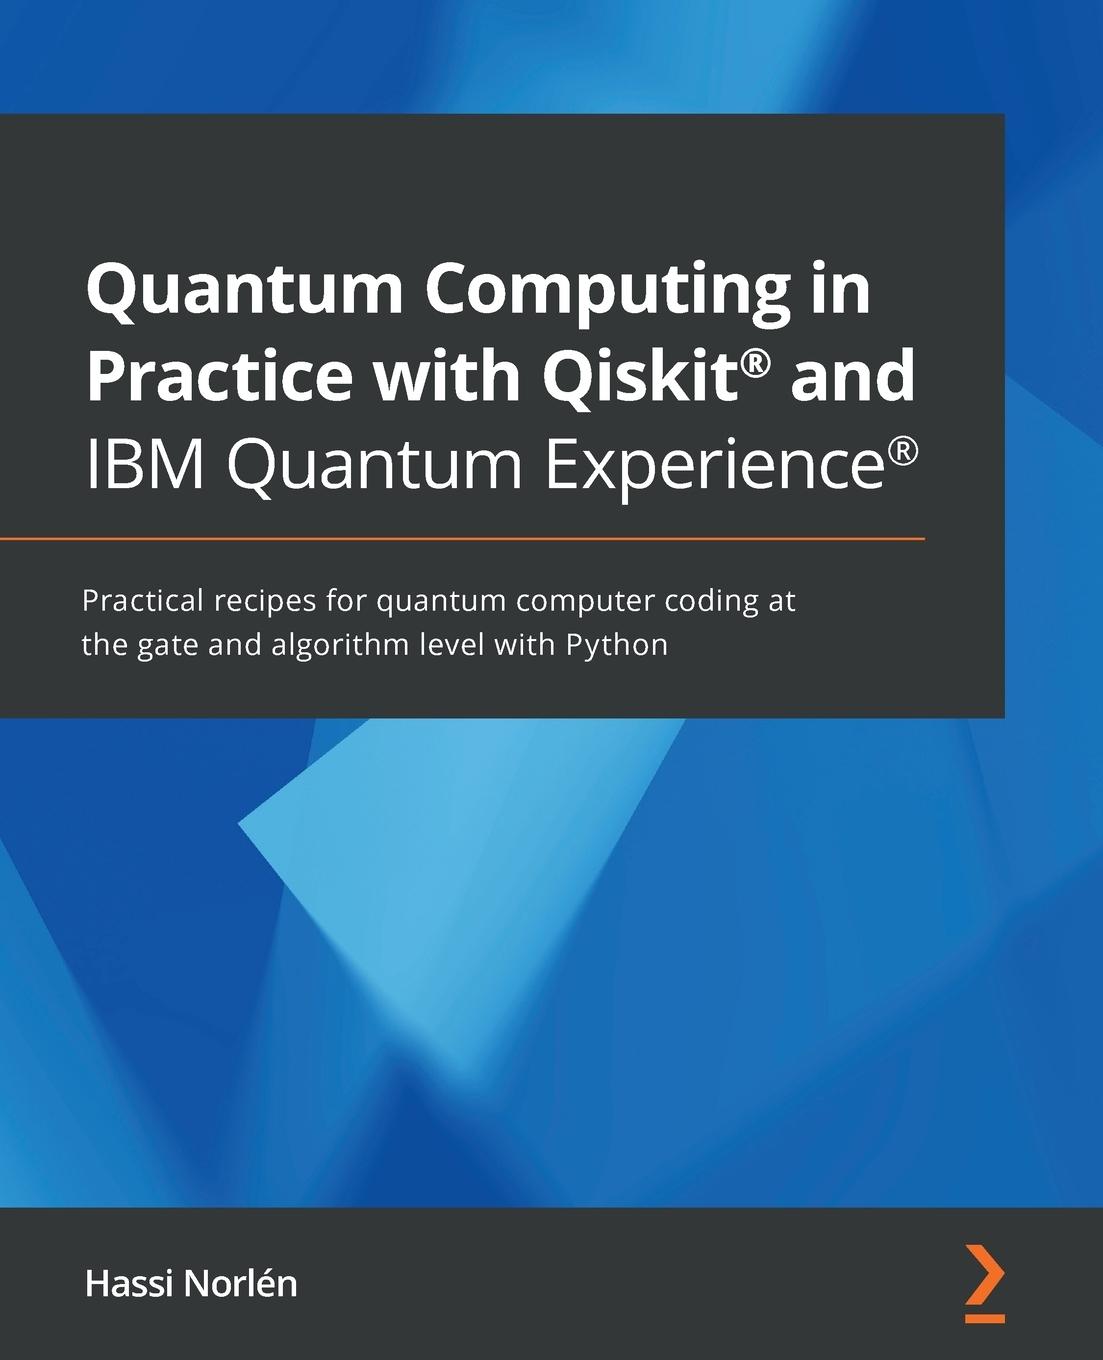 Carte Quantum Computing in Practice with Qiskit (R) and IBM Quantum Experience (R) 